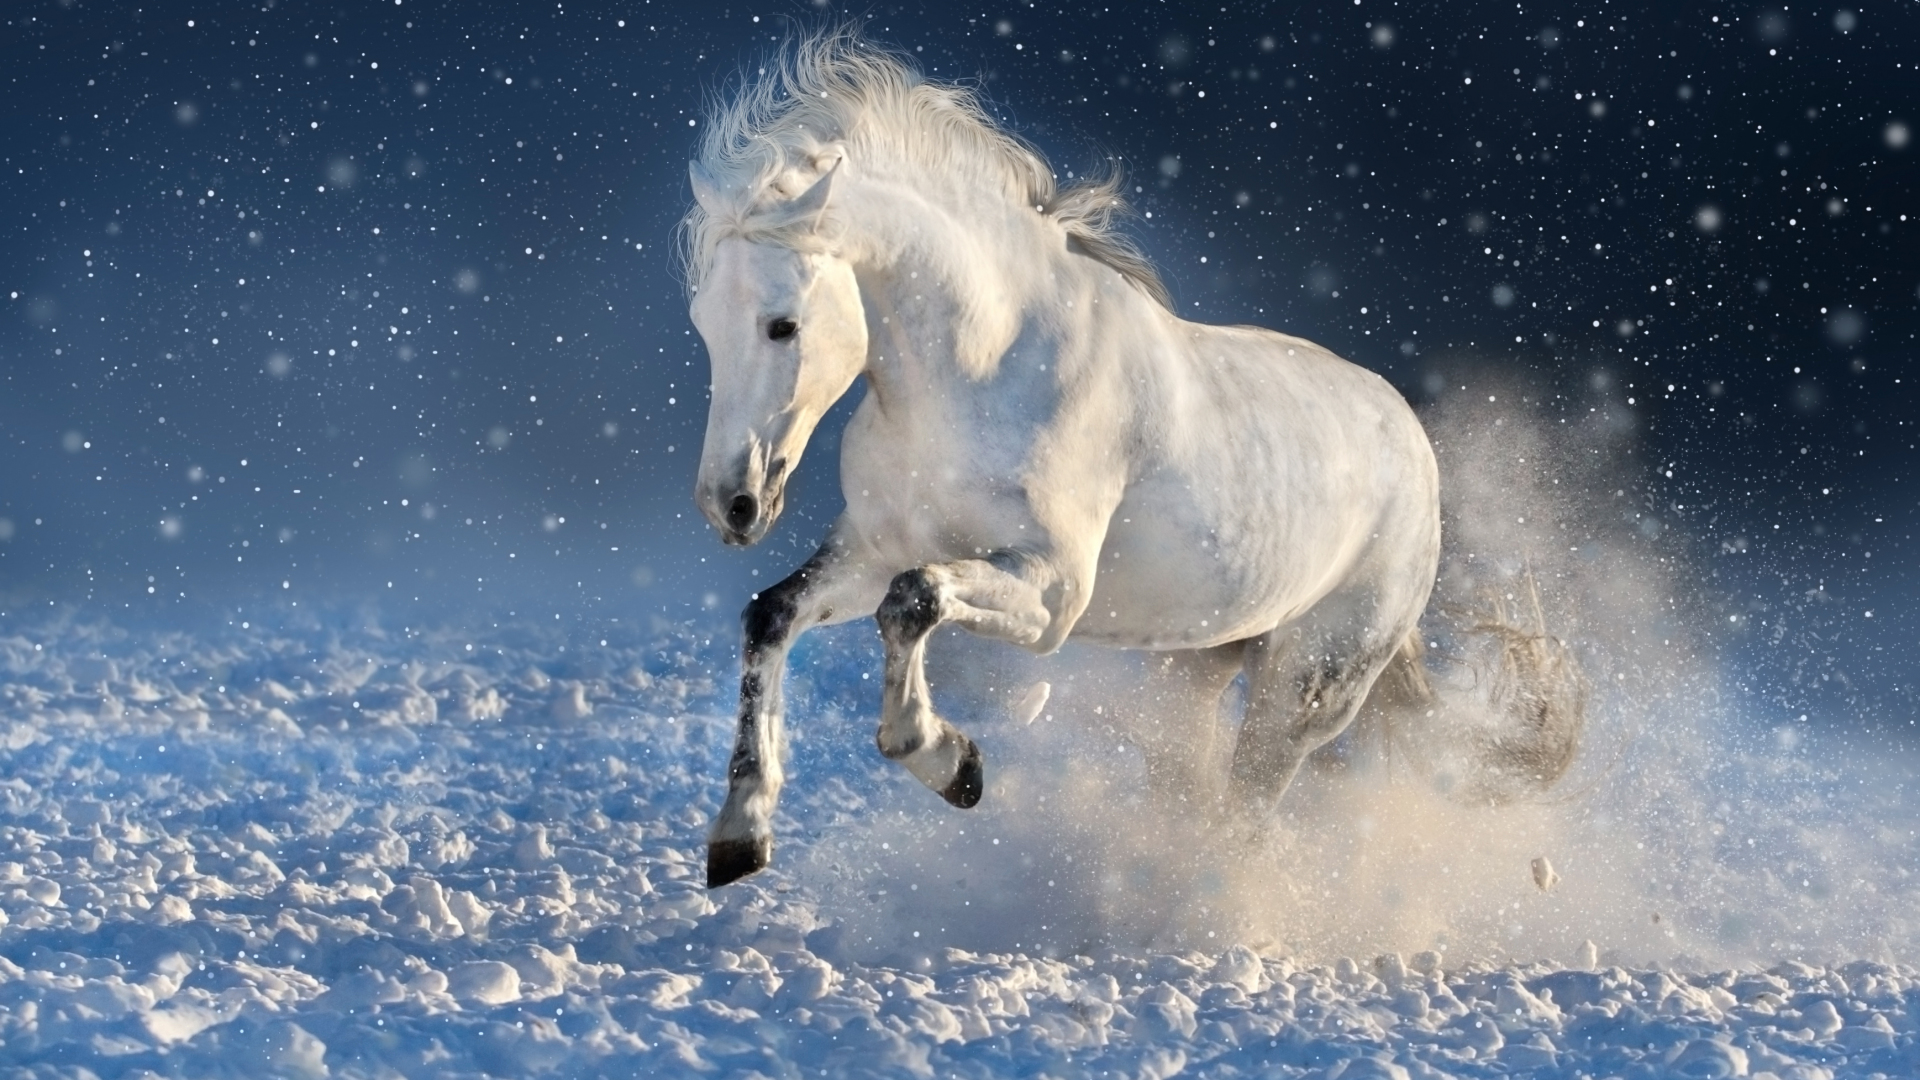 sfondi ritratto hd 1080p,cavallo,cielo,criniera,stallone,inverno